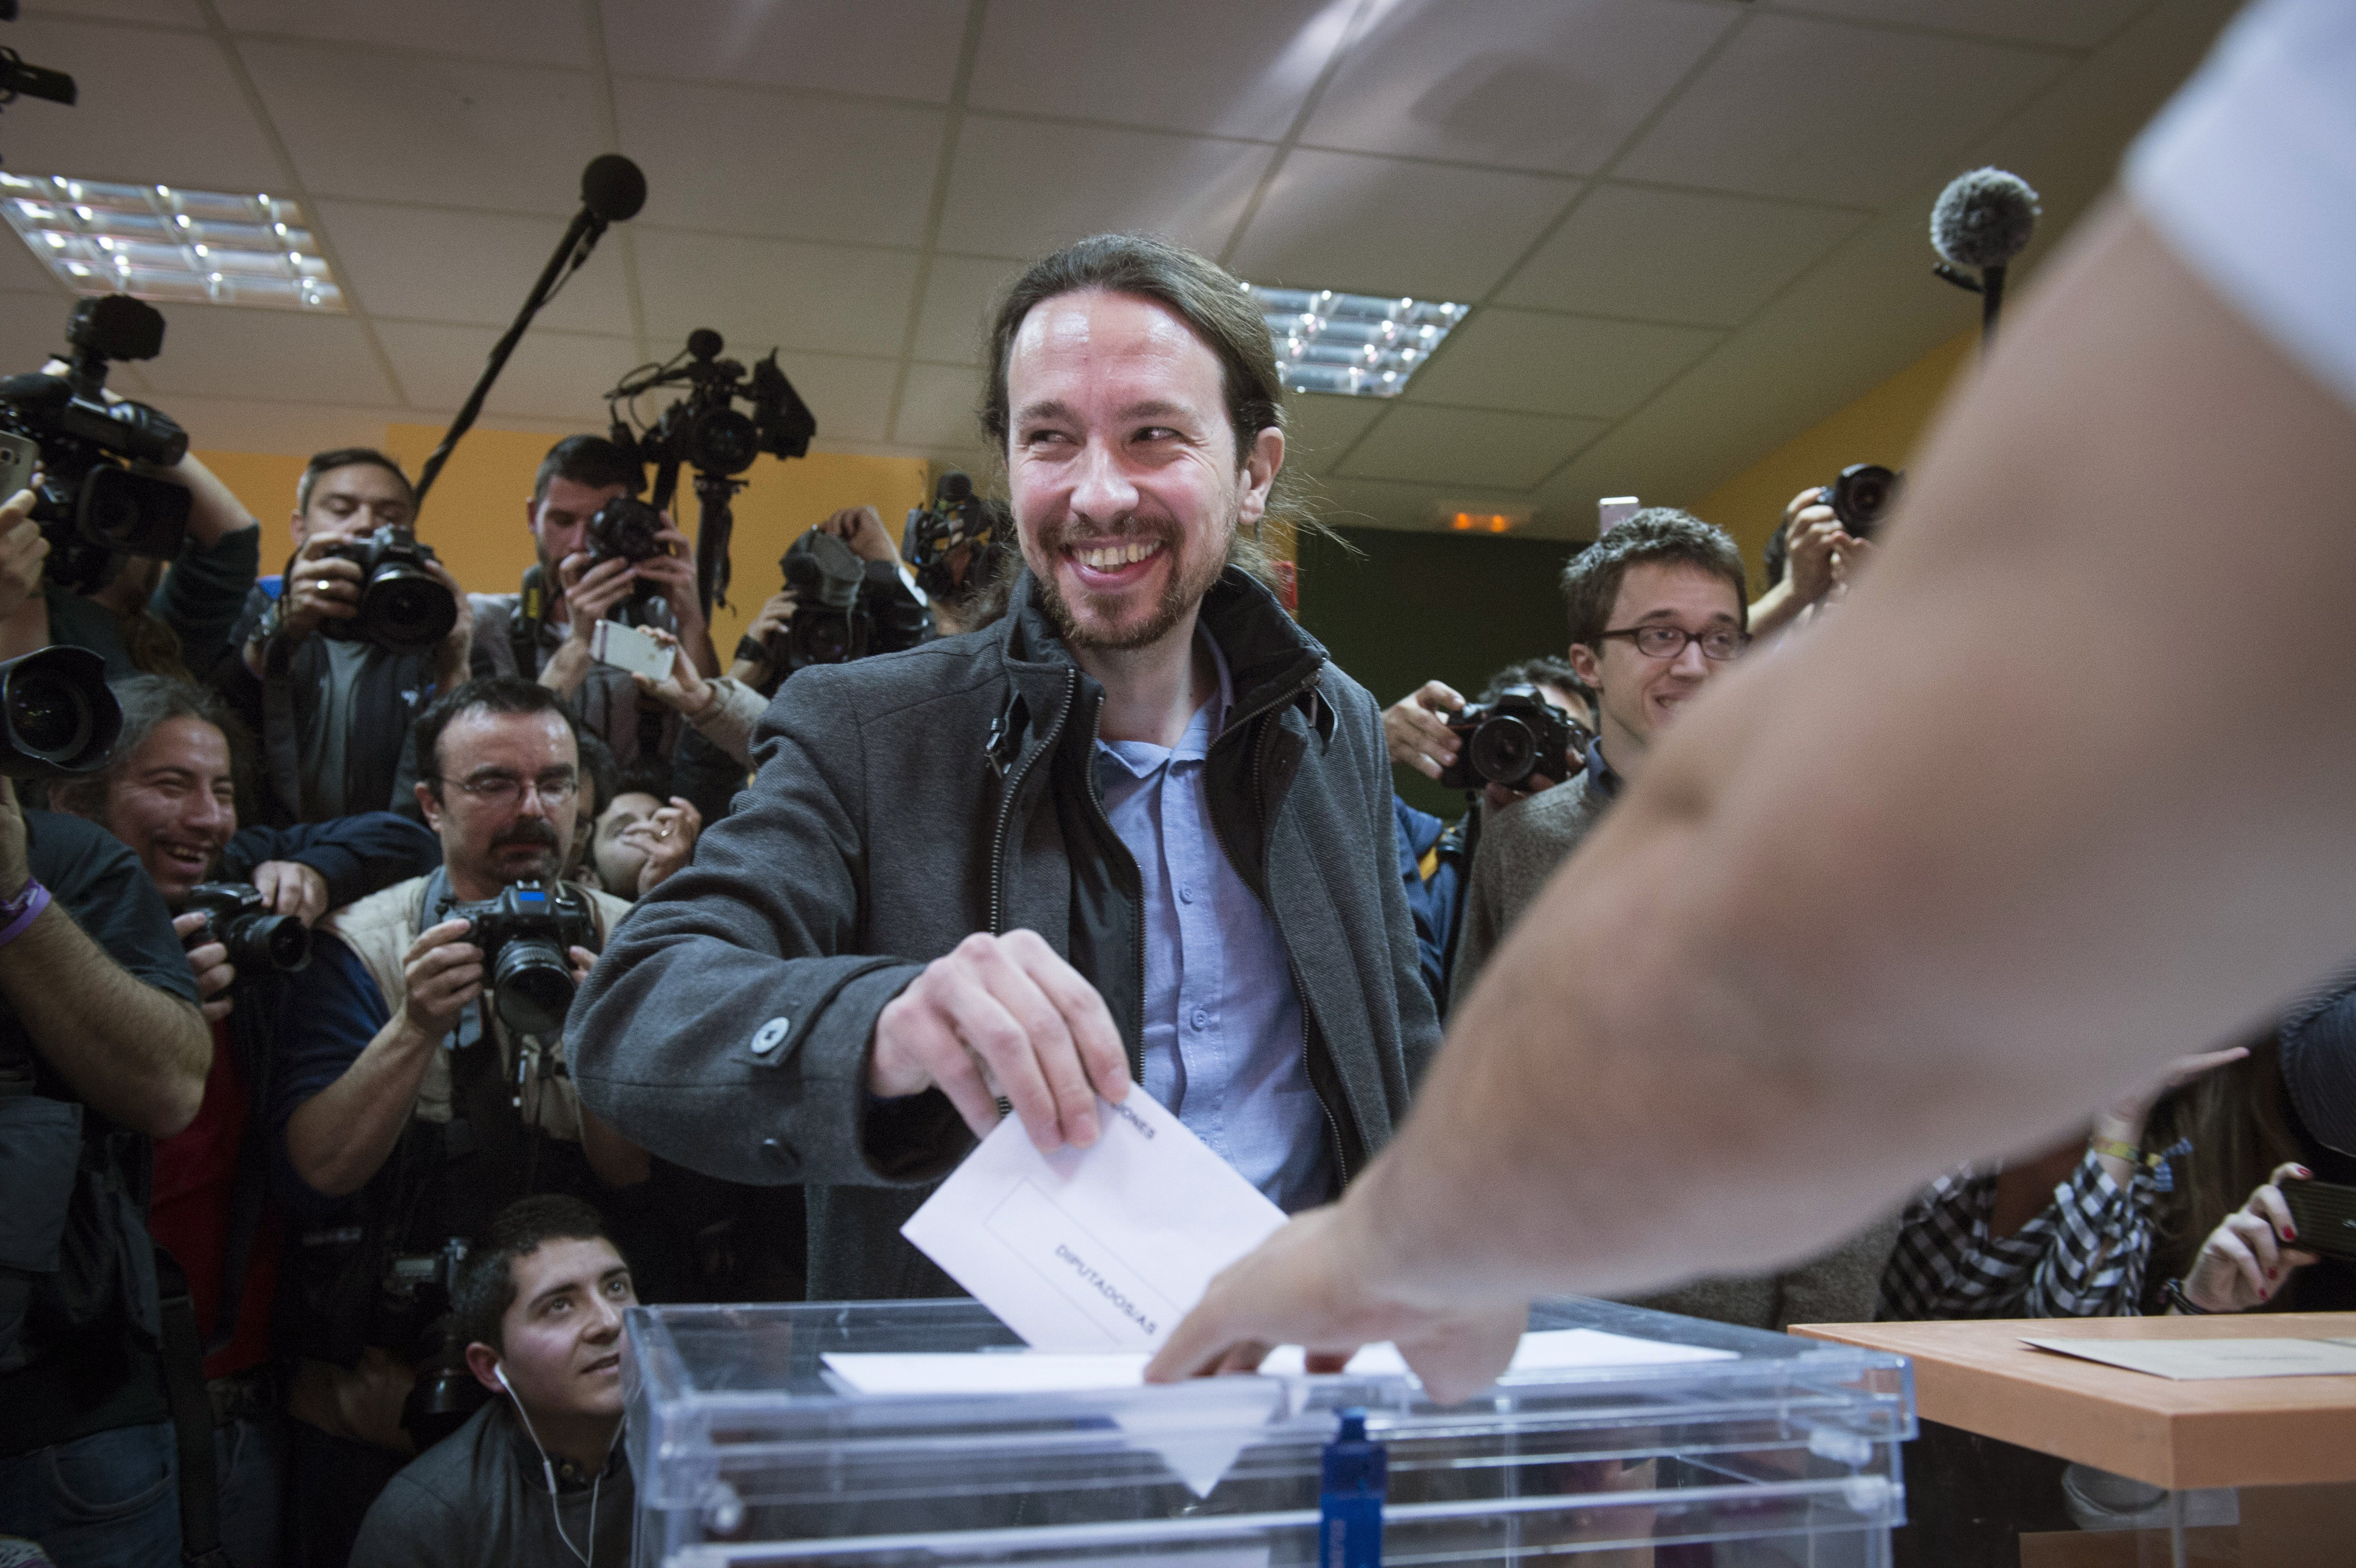 El candidato de Podemos a la Presidencia del Gobierno, Pablo Iglesias, ha votado esta mañana en el IES Tirso de Molina, de la Avenida de la Albufera, durante la jornada de elecciones generales de hoy, 20D. EFE/Luca Piergiovanni